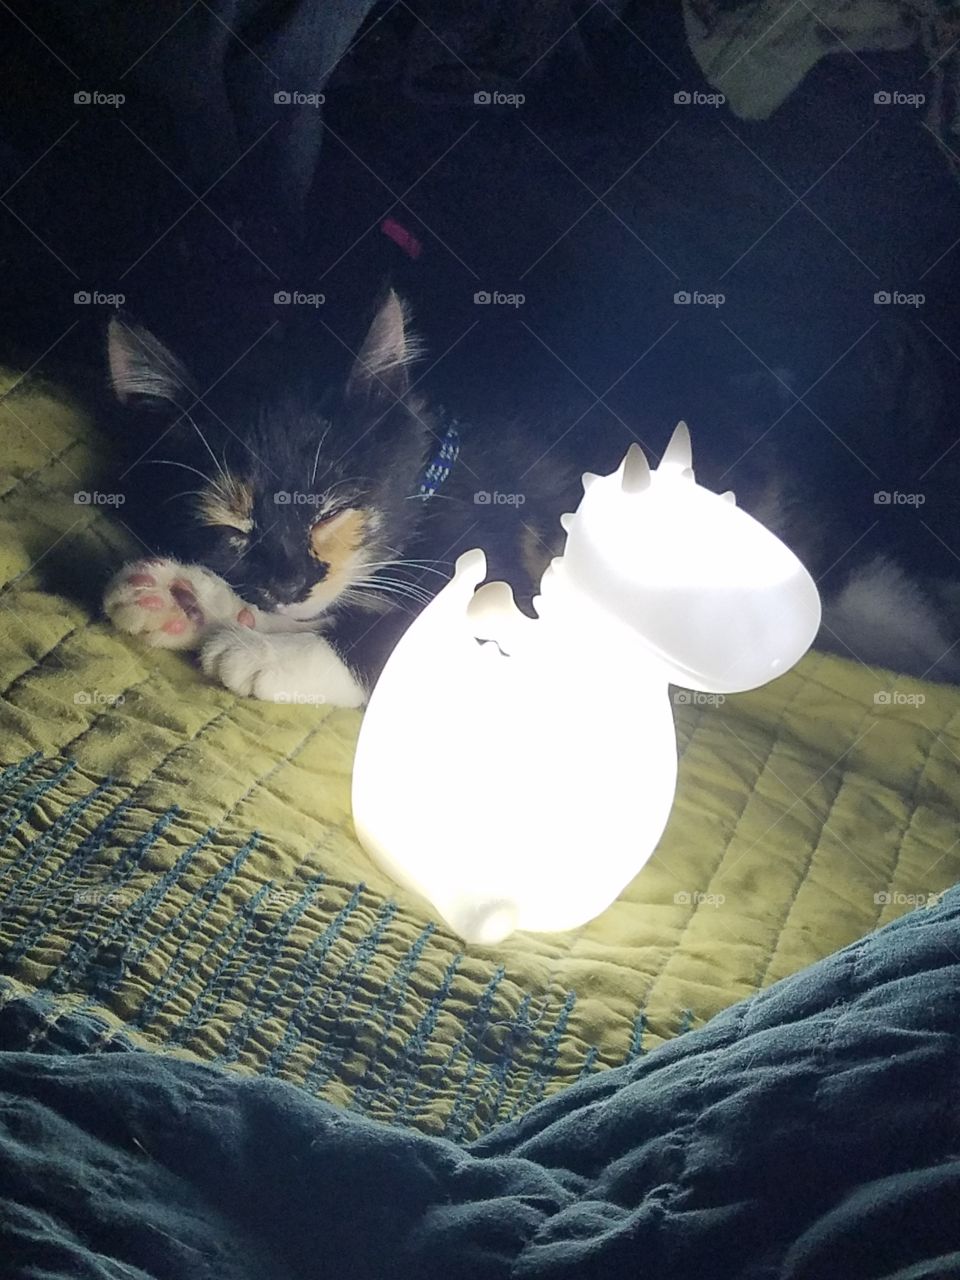 Kitten sleeps with dragon night light.